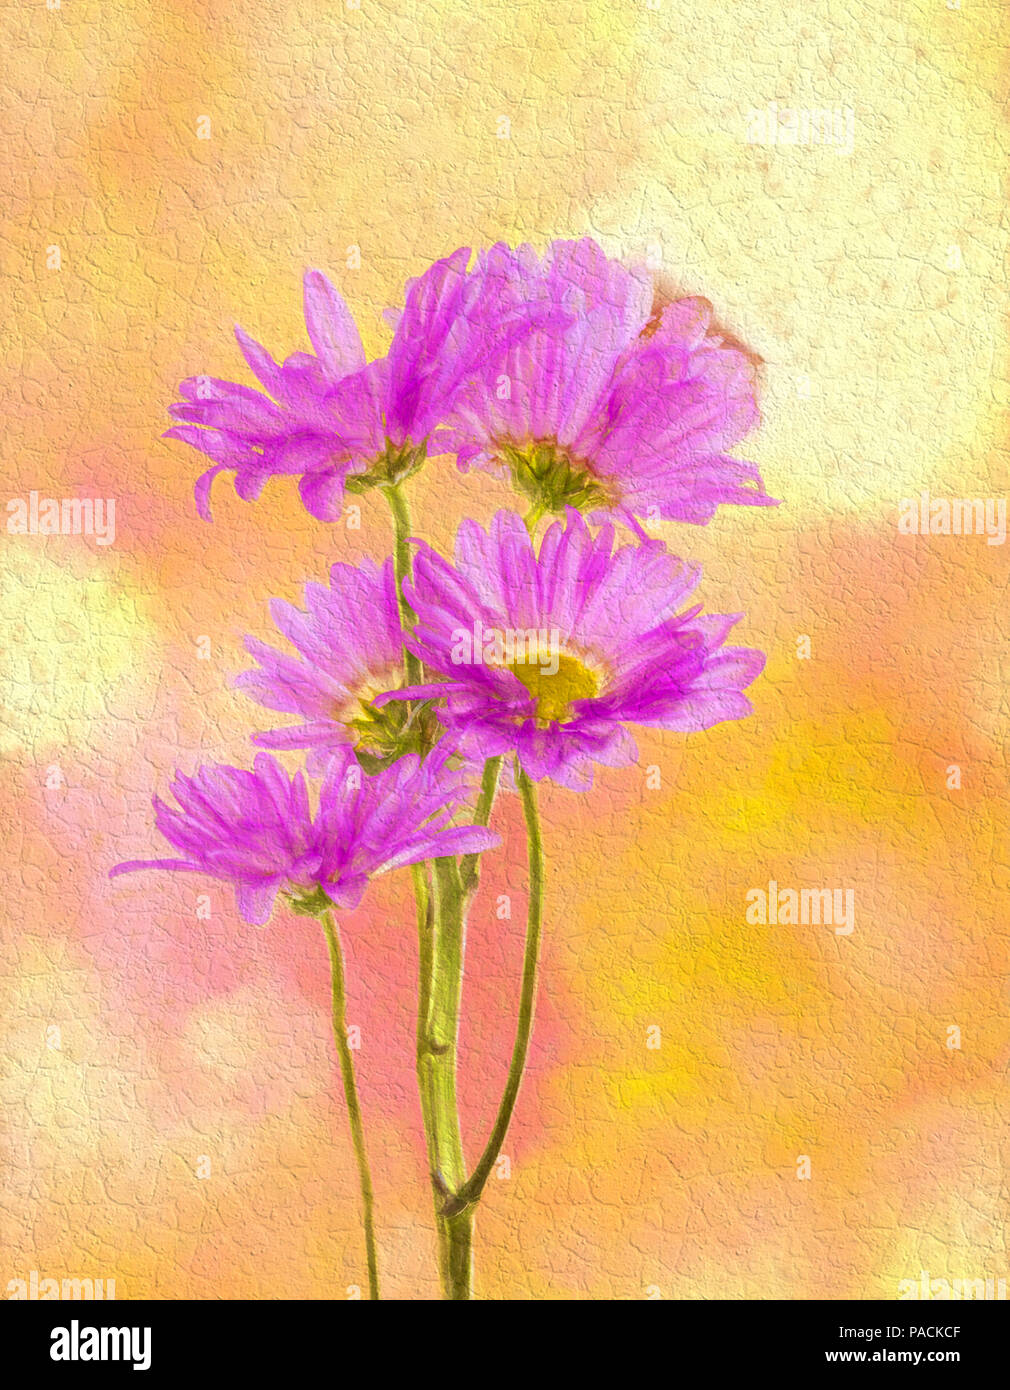 Rosa crisantemi o mamme contro uno sfondo giallo Foto Stock